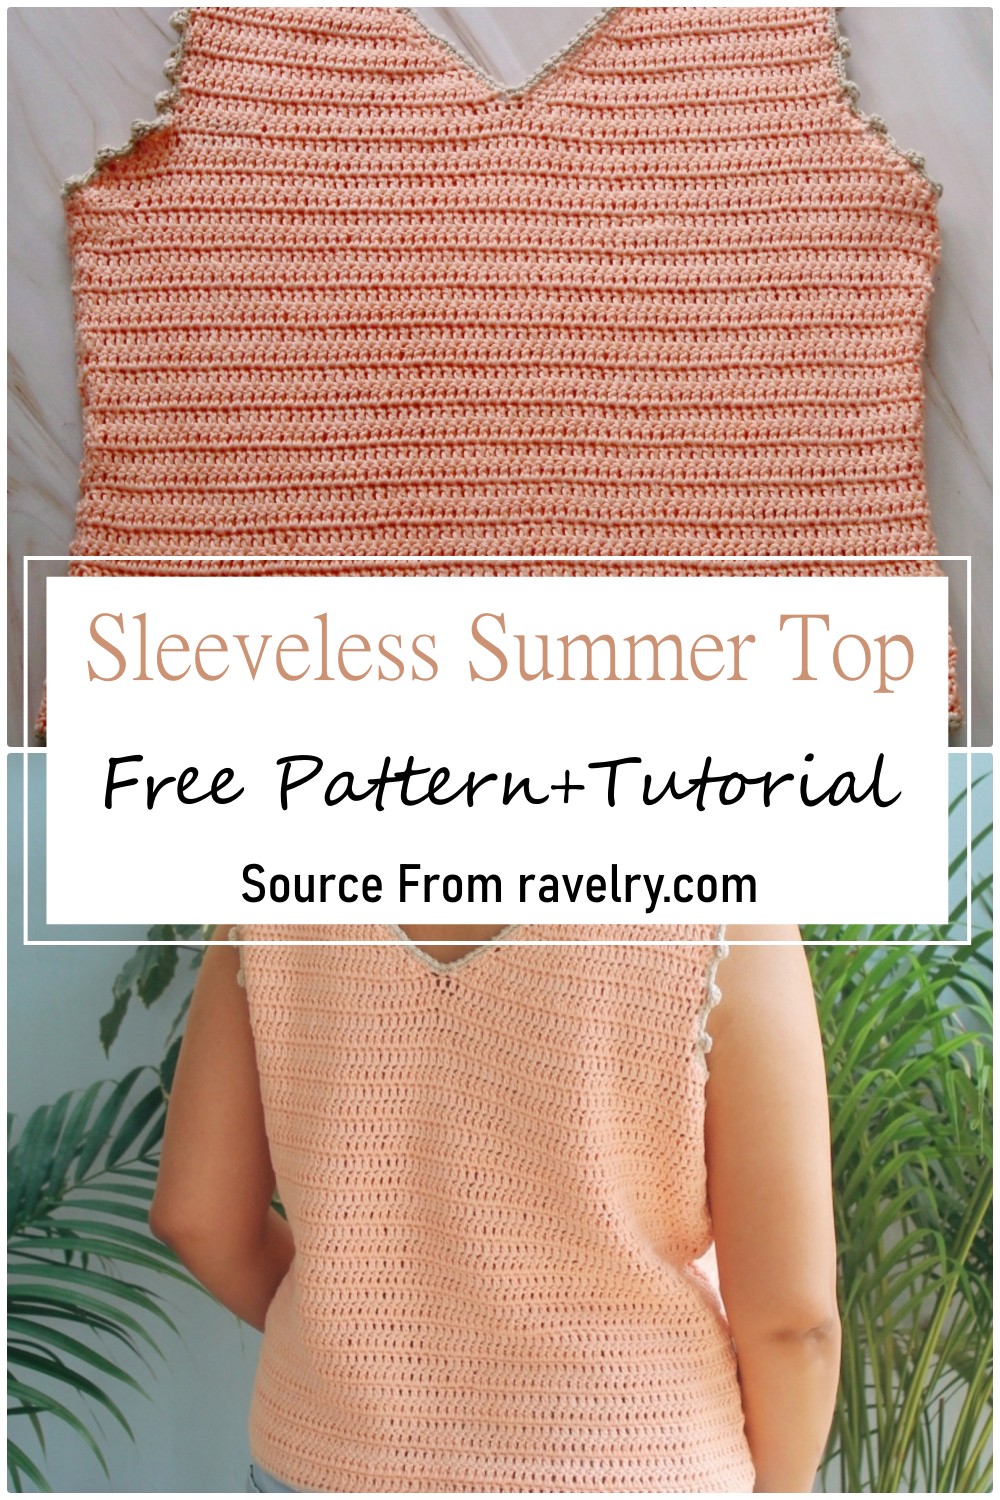 Sleeveless Summer Top To Crochet